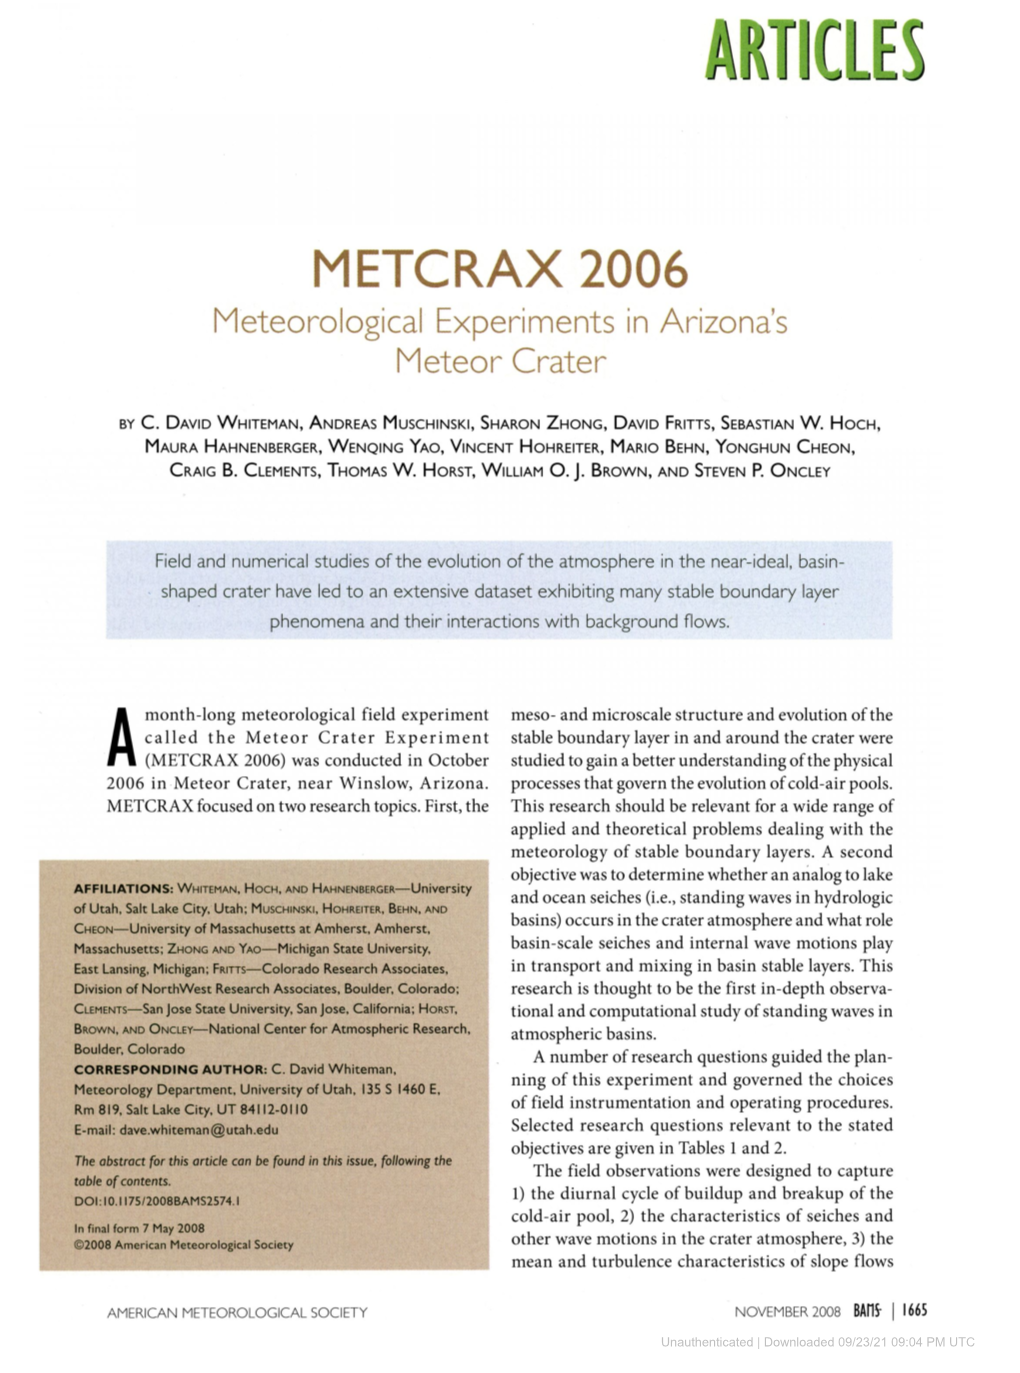 METCRAX 2006 Meteorological Experiments in Arizona's Meteor Crater